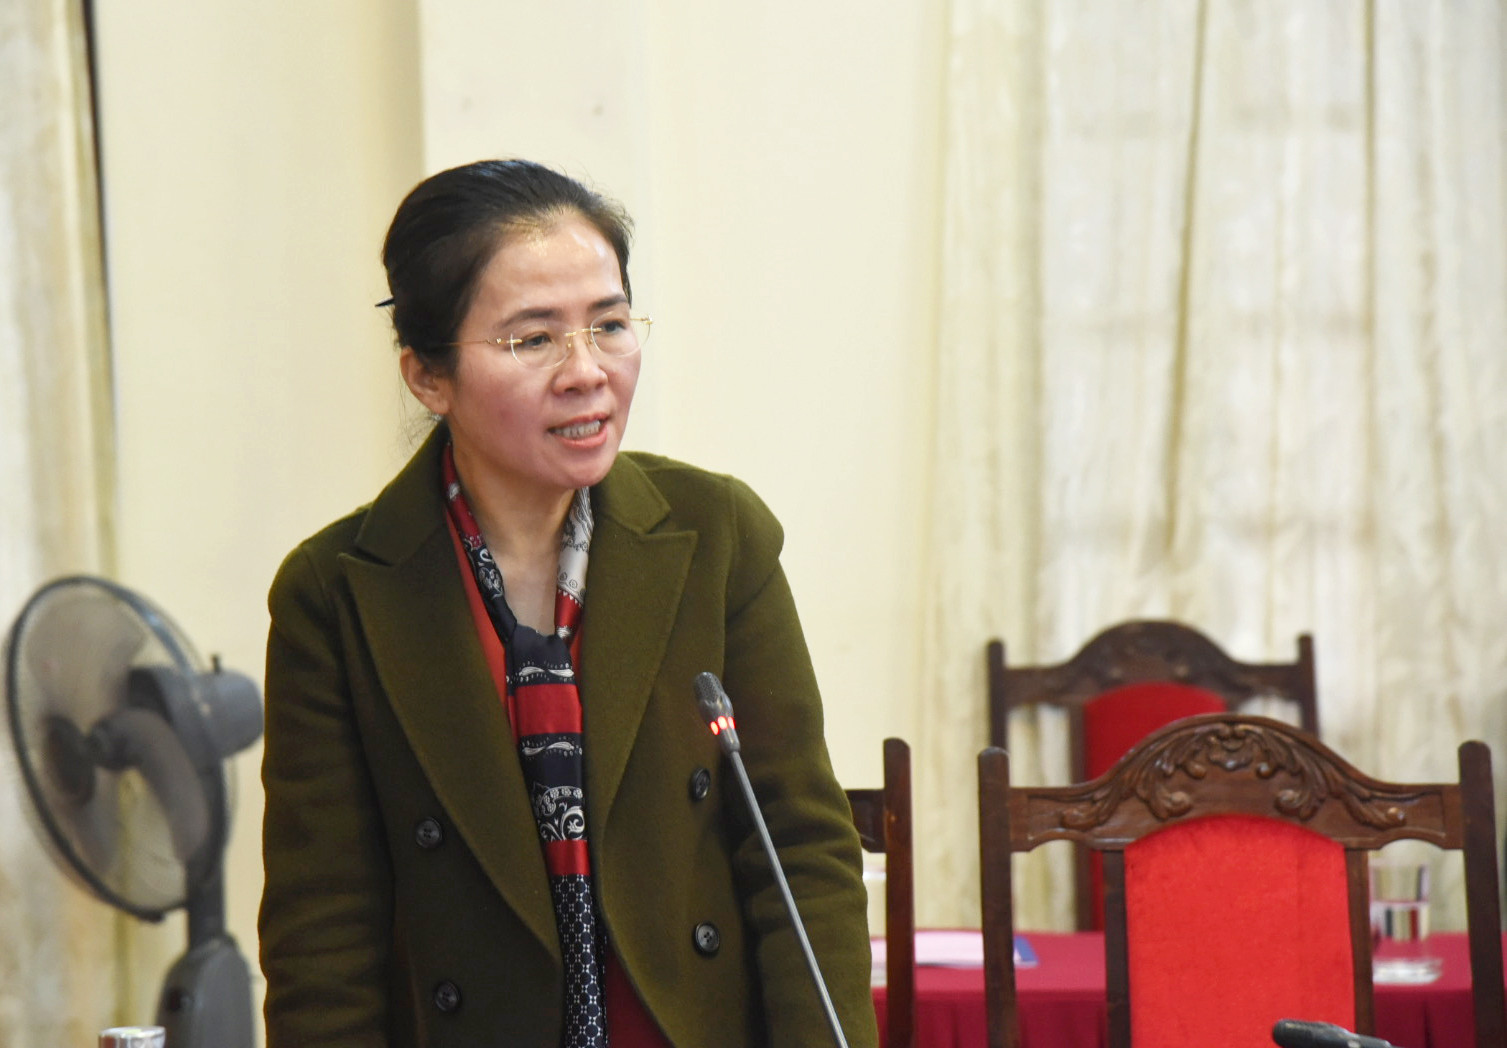 Đồng chí Võ Thị Minh Sinh - Ủy viên Ban Thường vụ Tỉnh ủy, Chủ tịch Ủy ban MTTQ Việt Nam tỉnh phát biểu tại hội nghị, nhấn mạnh sự cần thiết phải phối hợp chặt chẽ giữa MTTQ và các tổ chức chính trị - xã hội để cụ thể hóa các nội dung Nghị quyết 04. Ảnh: TG